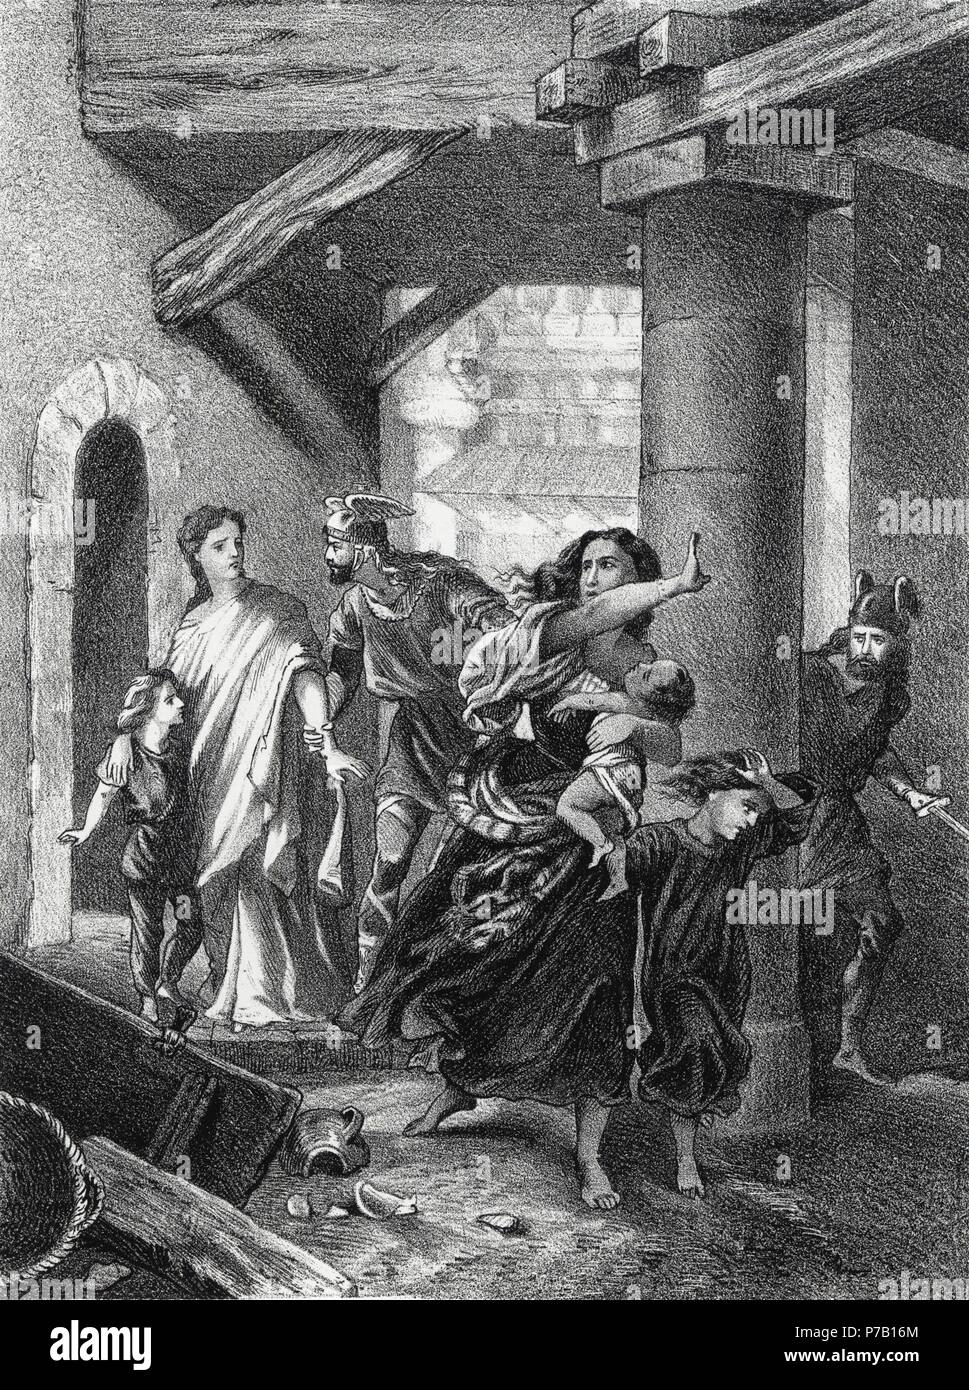 Historia. Expulsión de judíos durante el reinado de Egica, rey visigodo, acordada en el XVII Concilio de Toledo el año 694. Grabado de 1871. Stock Photo